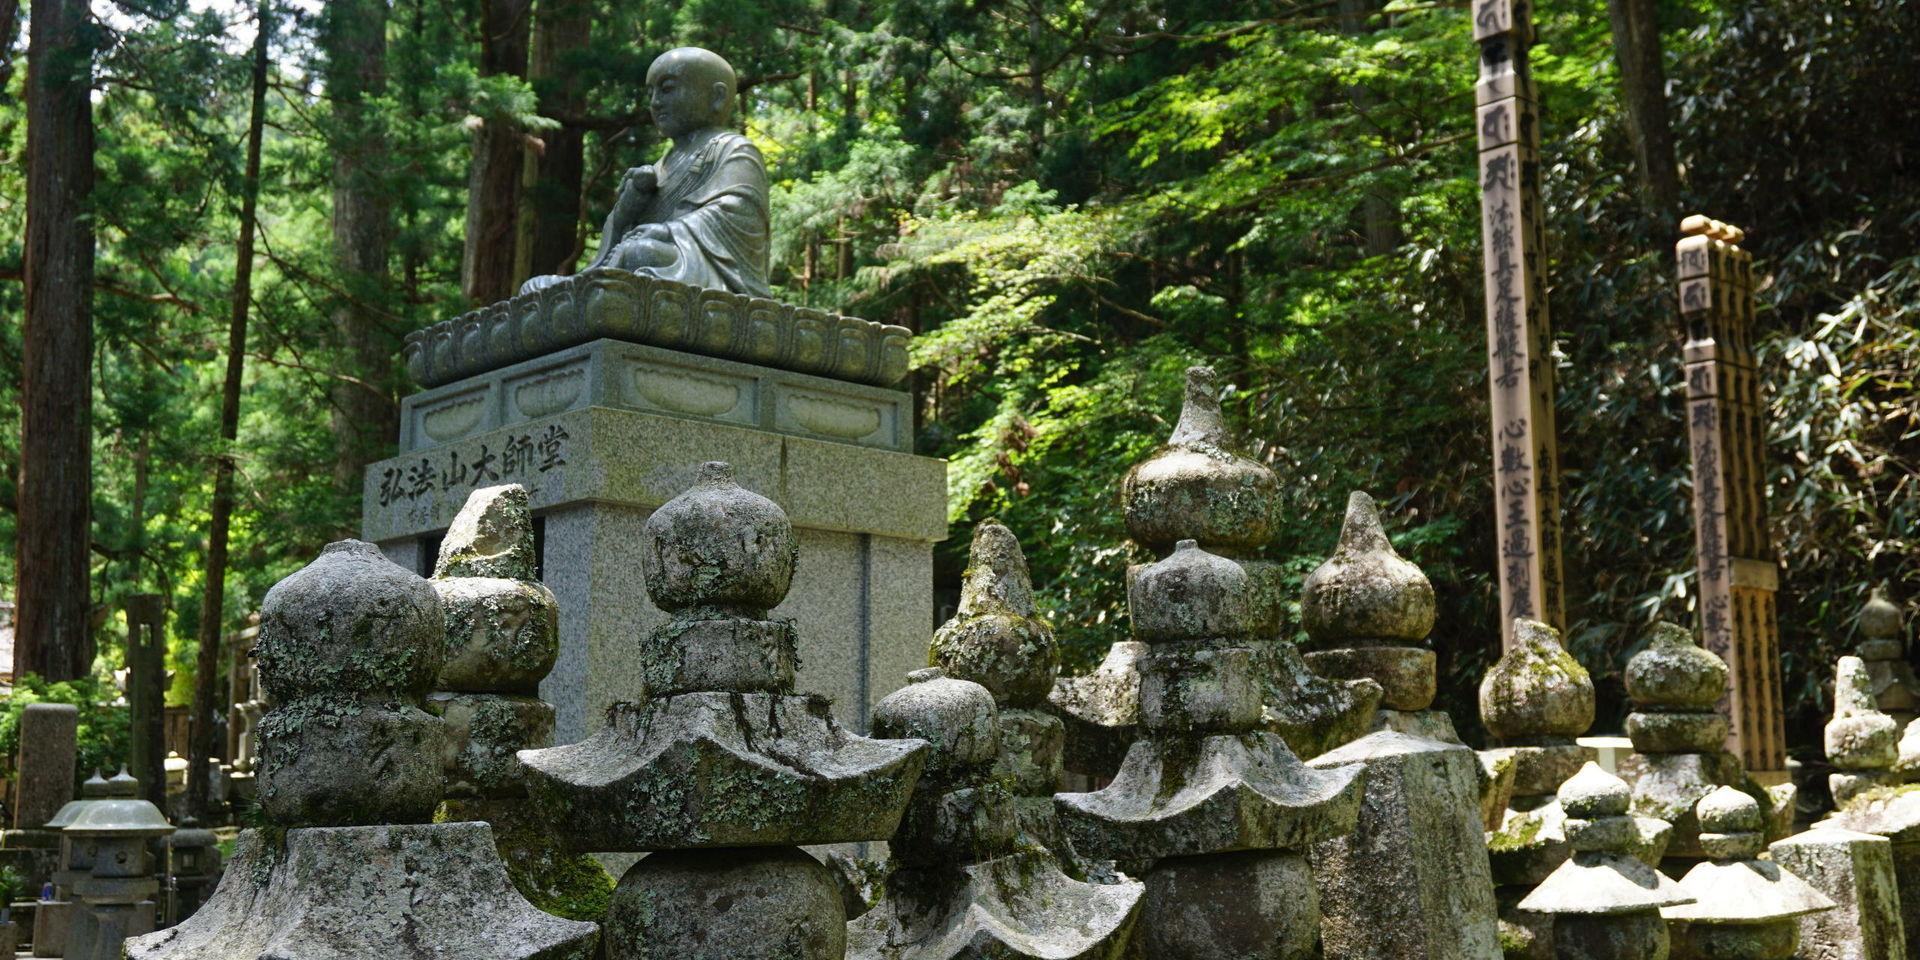 Buddhistisk kyrkogård. Oku-no-in, med på Unescos lista över världsarv, har kallats Japans mest spirituella plats. Den ligger i bergsbyn Koyasan, en av landets äldsta pilgrimsmål. Längst in i Oku-no-in finns mausoleet där byns grundare inte ligger begravd men väl sägs sitta i evig meditation. 